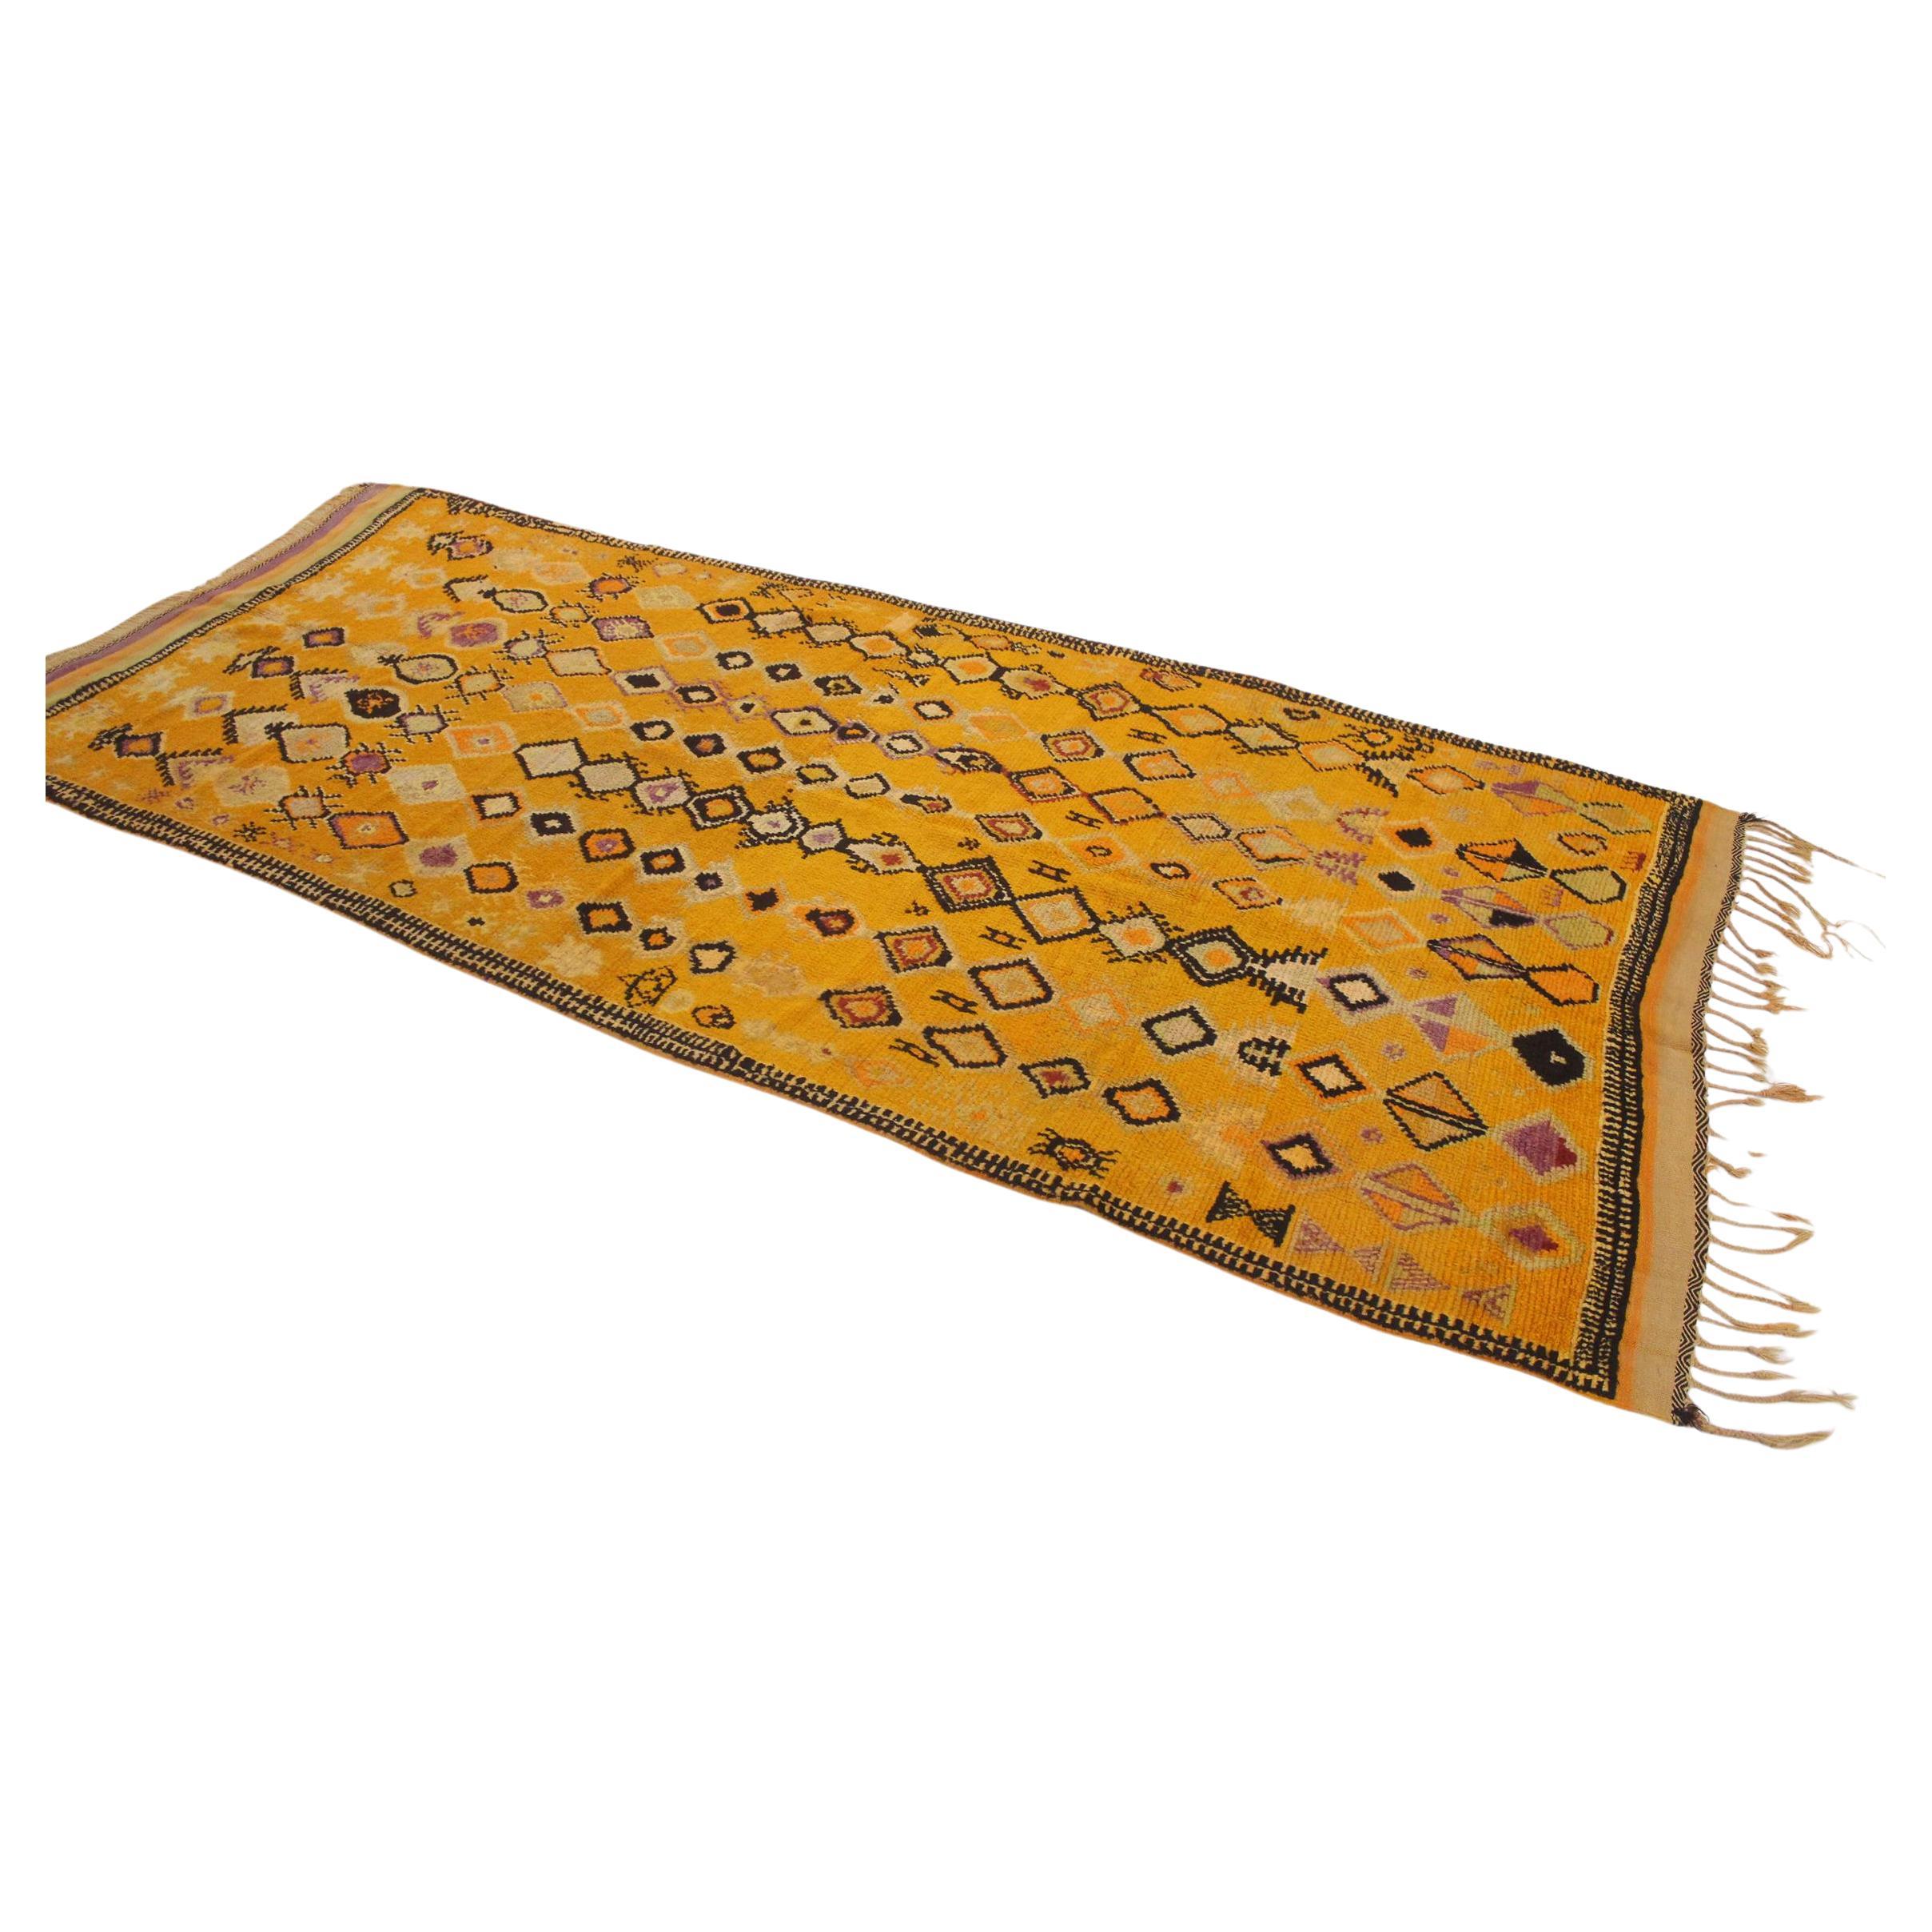 Vintage Ait Ouaouzguite rug - Yellow/purple/black - 5x12.1feet / 152x370cm For Sale